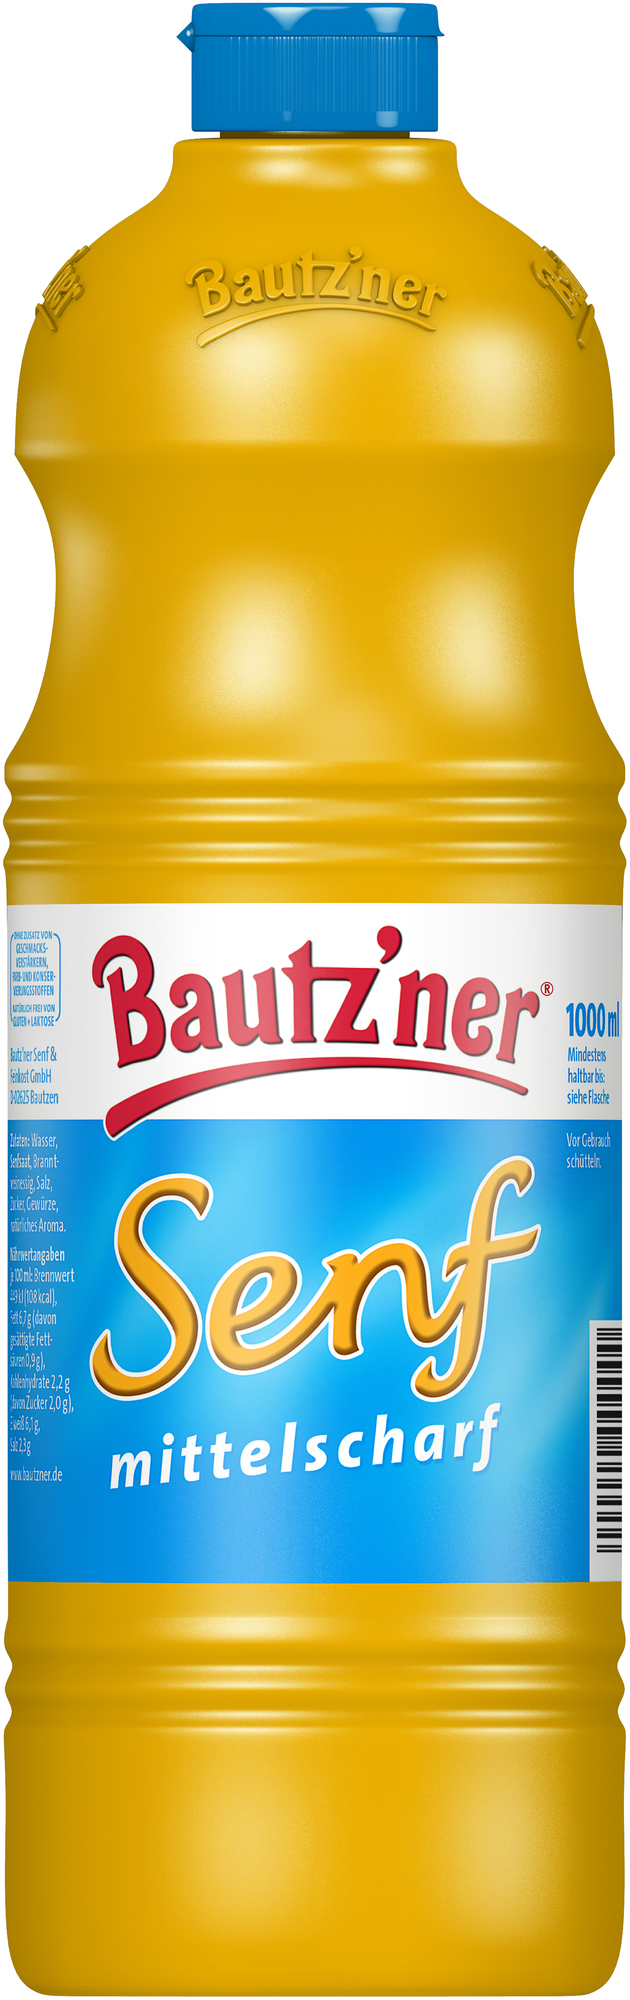 Bautzner Senf mittelscharf 1000 ml